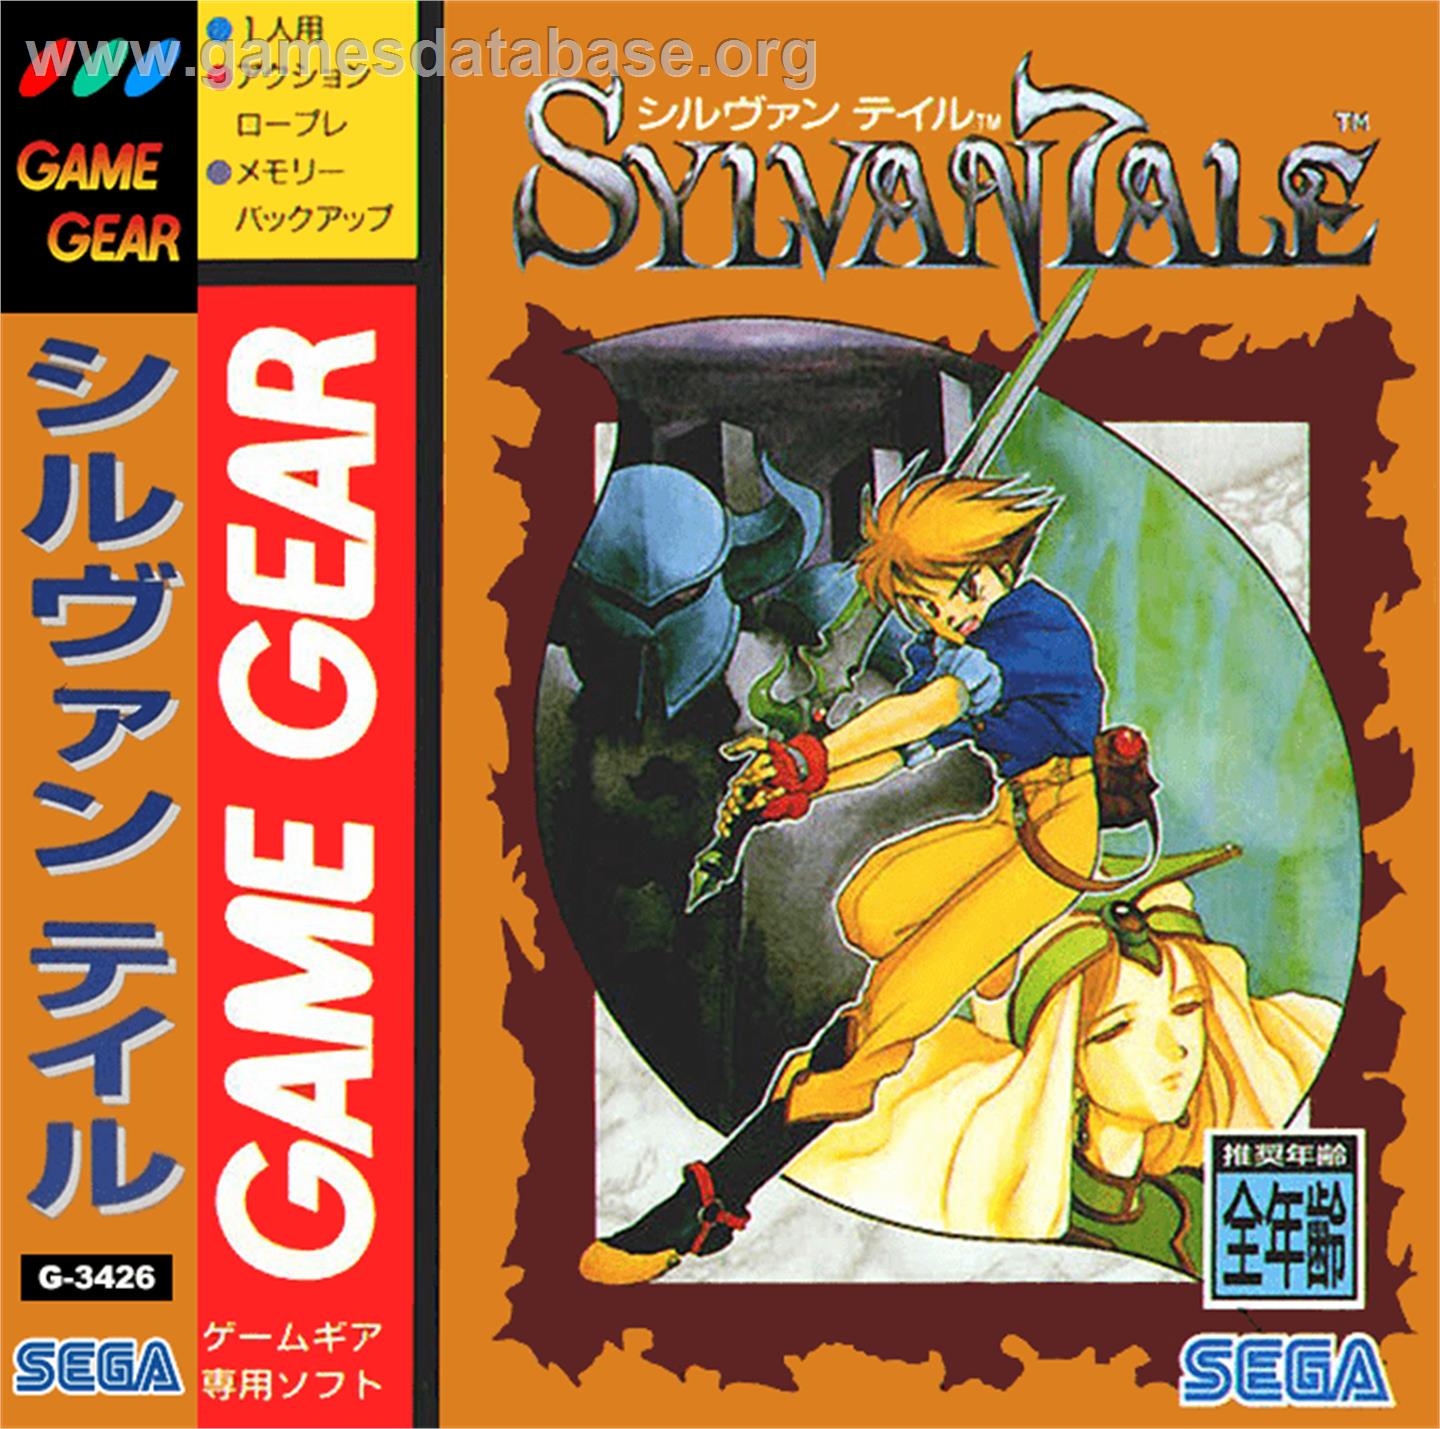 Sylvan Tale - Sega Game Gear - Artwork - Box